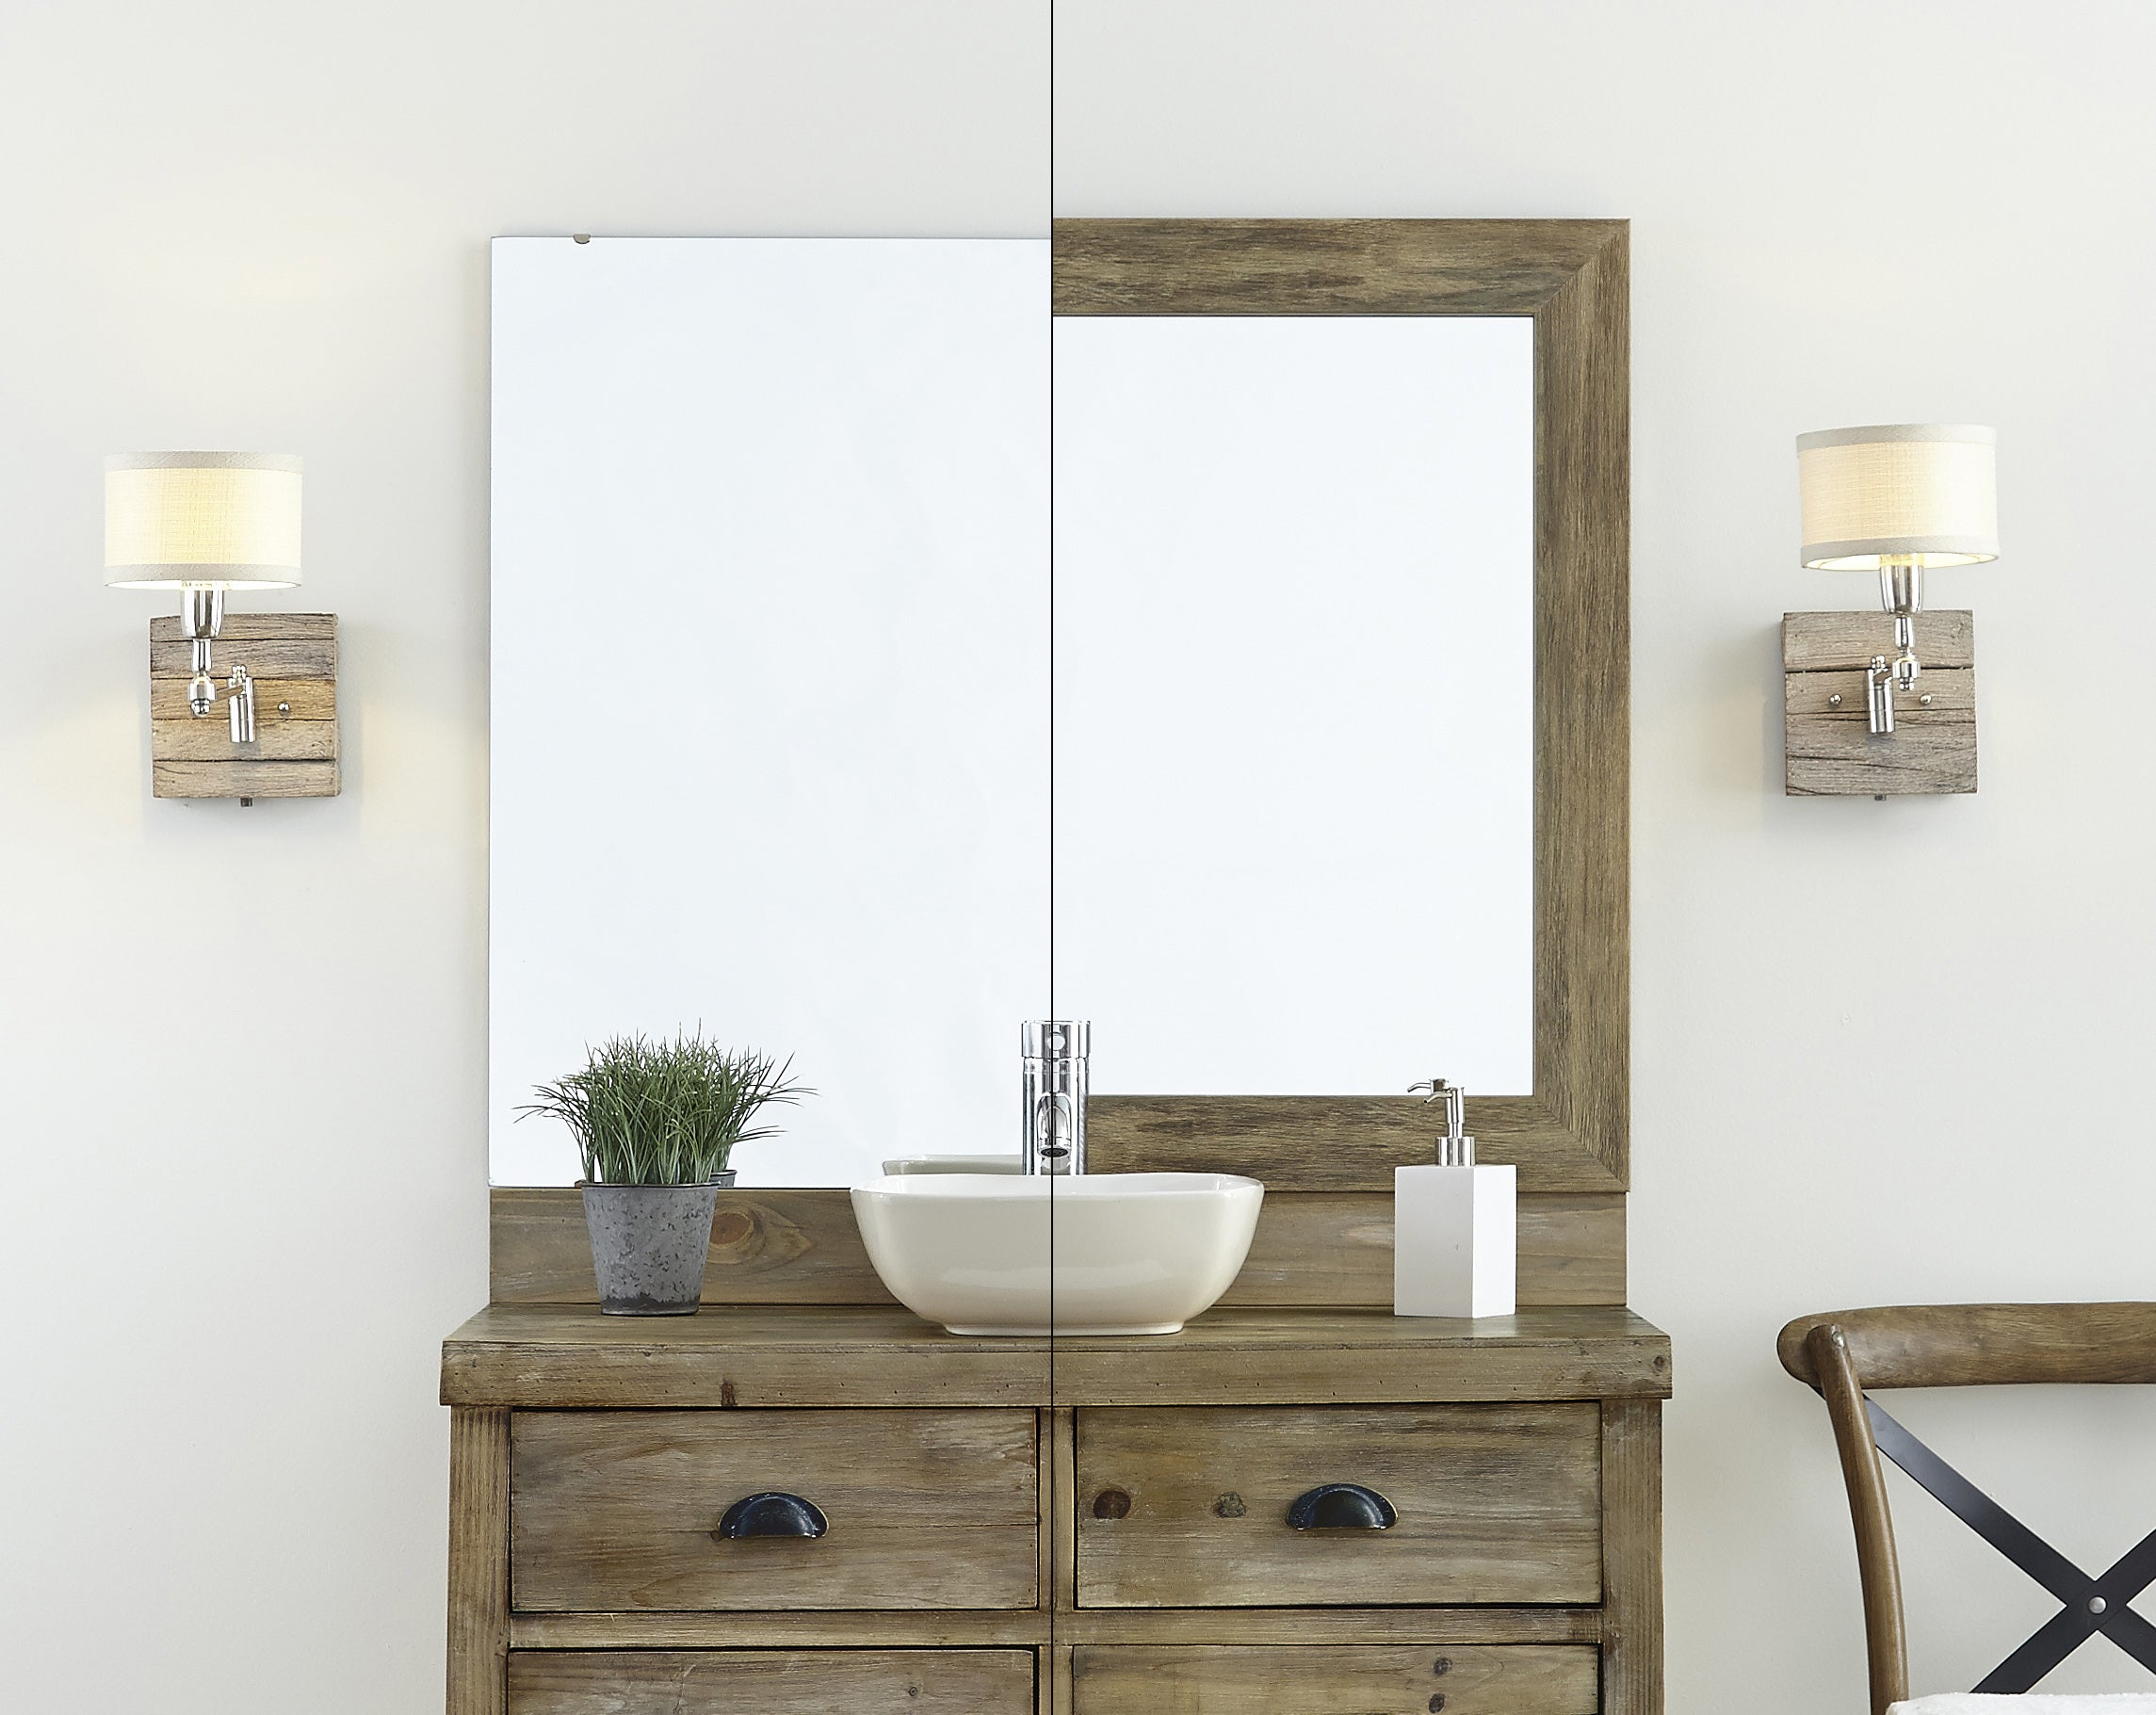 Barnwood Mirror Frame on Bathroom Vanity Before & After